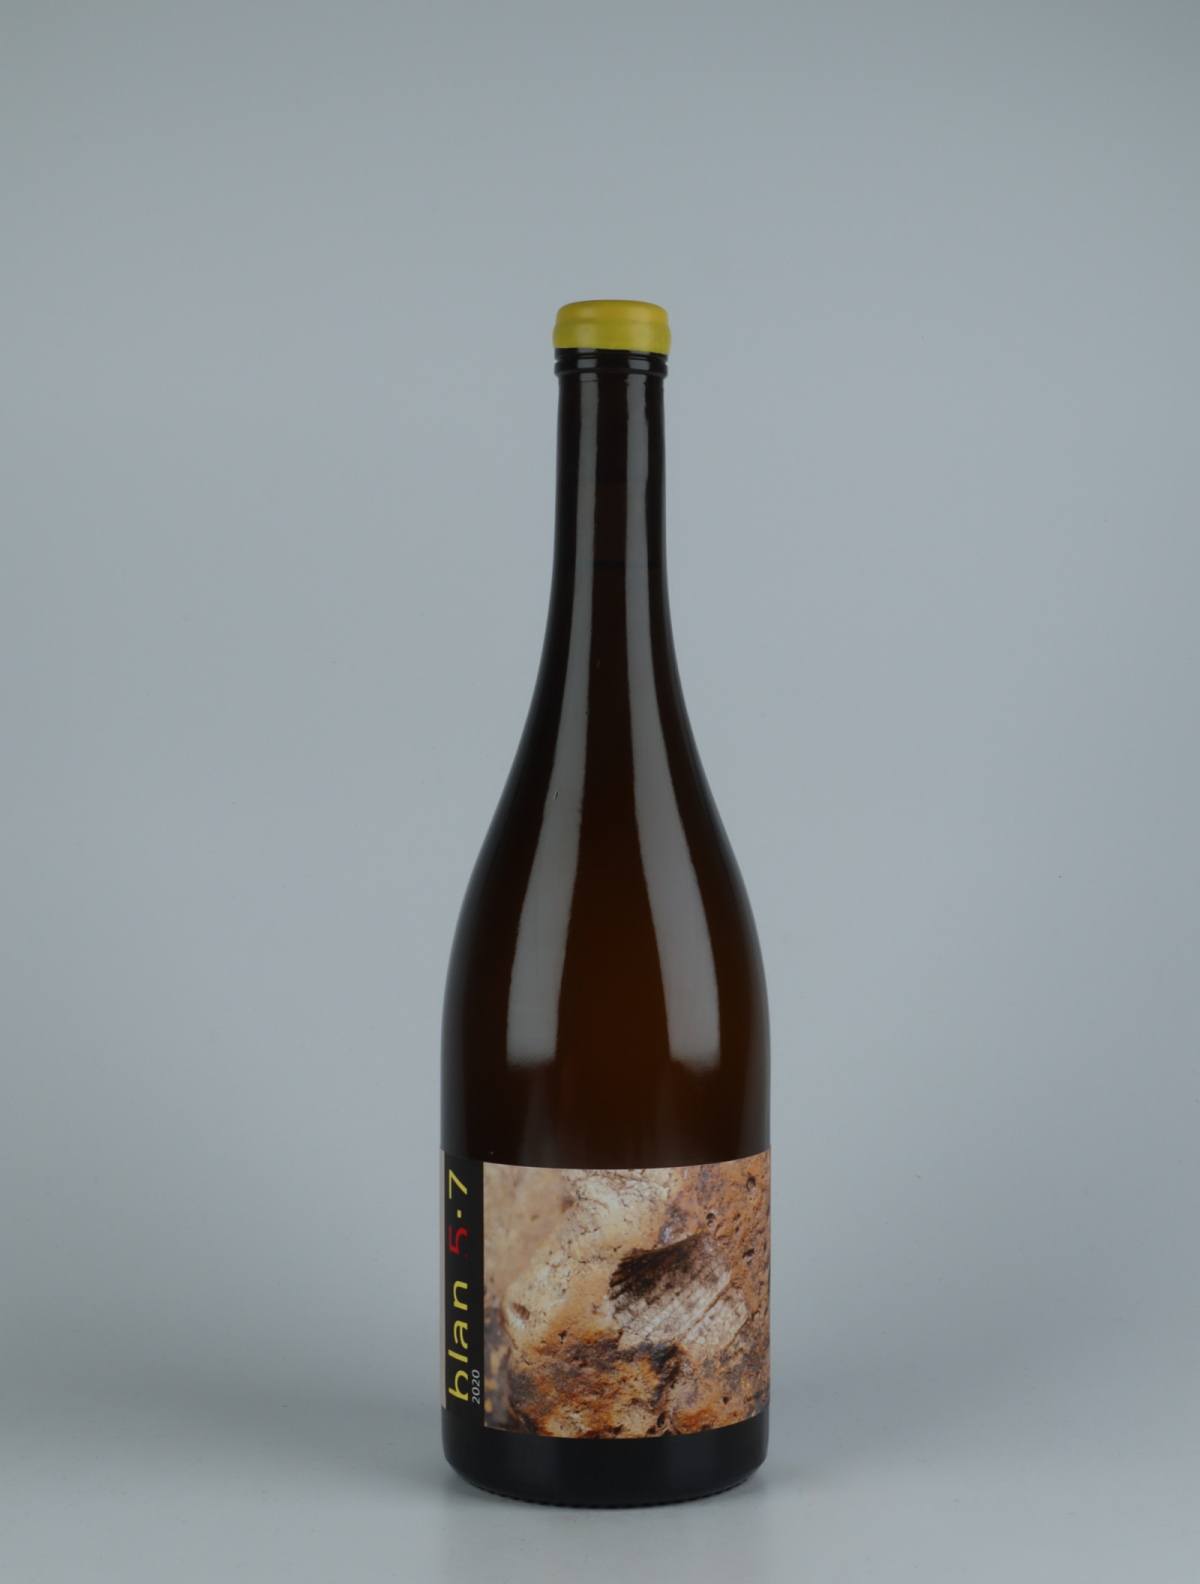 En flaske 2020 Blan 5-7 Orange vin fra Jordi Llorens, Catalonien i Spanien